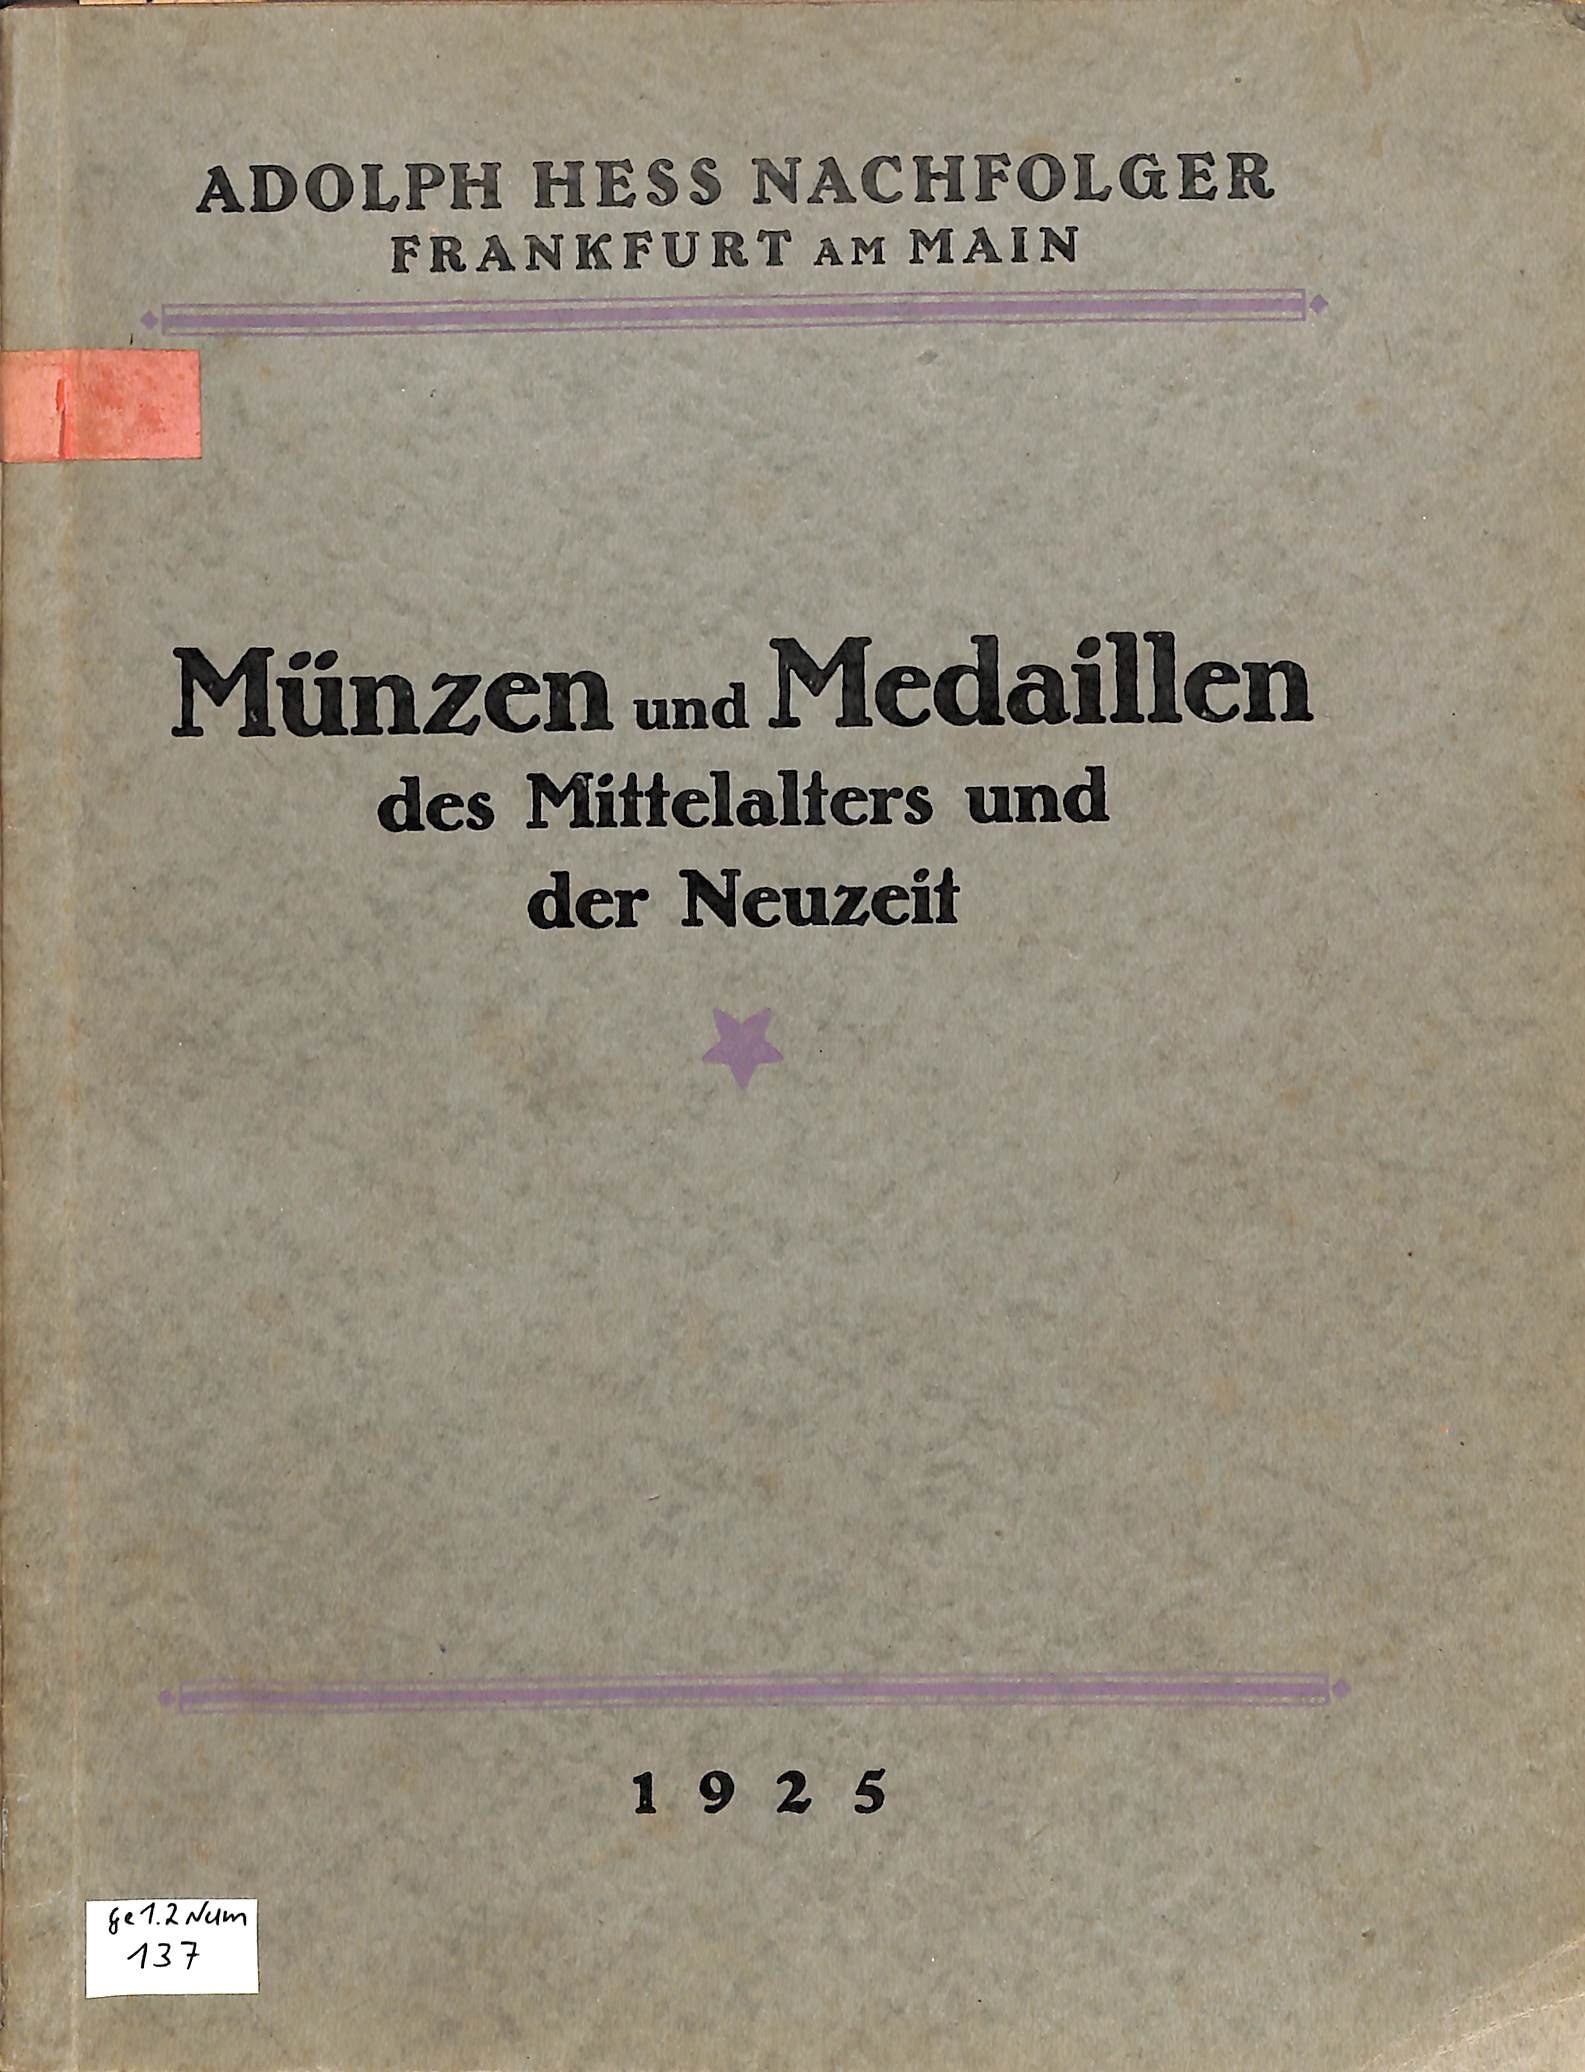 Adolph Hess Nachfolger, Verkaufsverzeichnis 1925 (Heimatwelten Zwönitz CC BY-NC-SA)